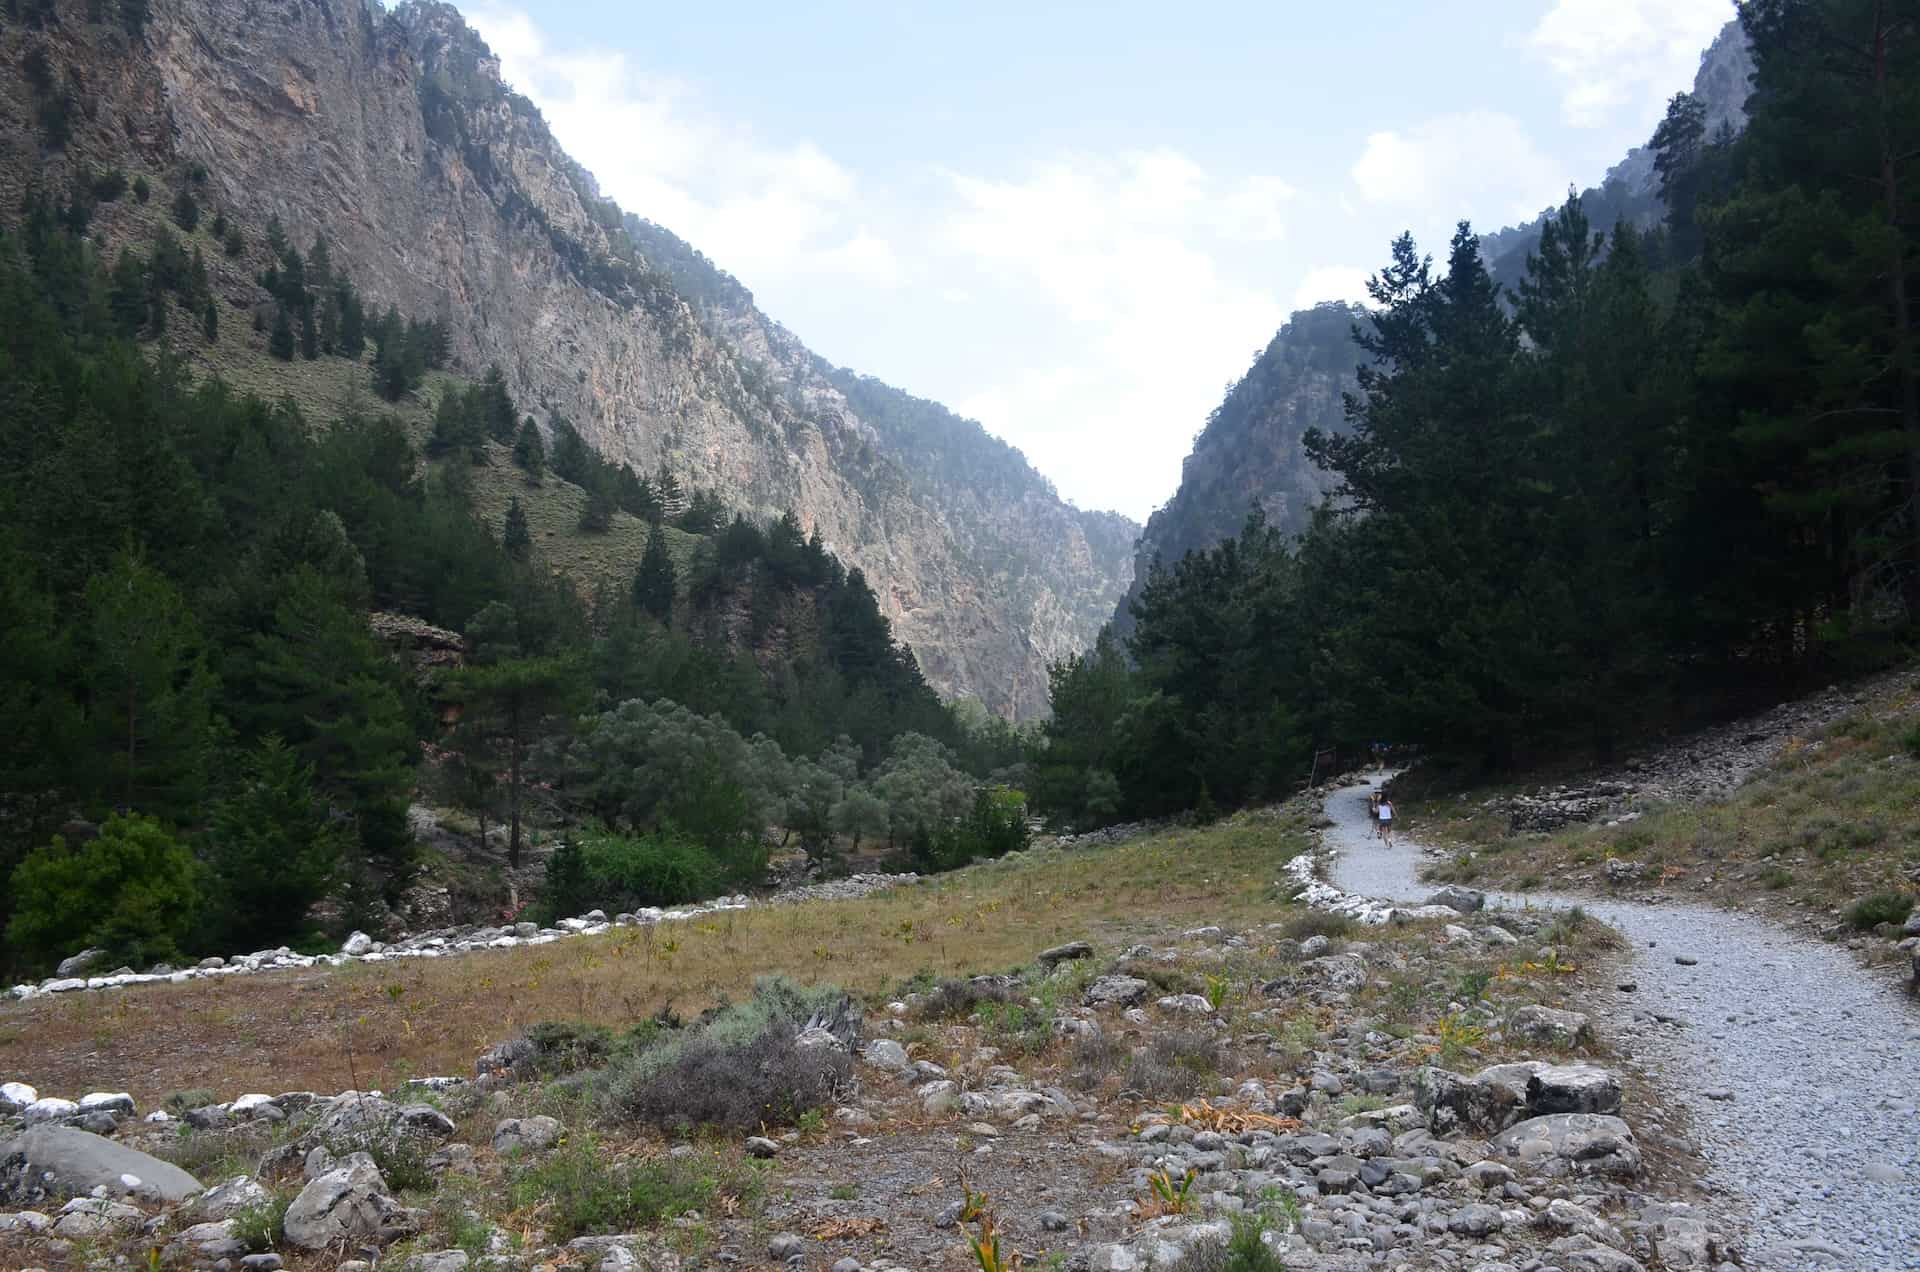 Trail from Samaria to Nero tis Perdikas at the Samaria Gorge in Crete, Greece